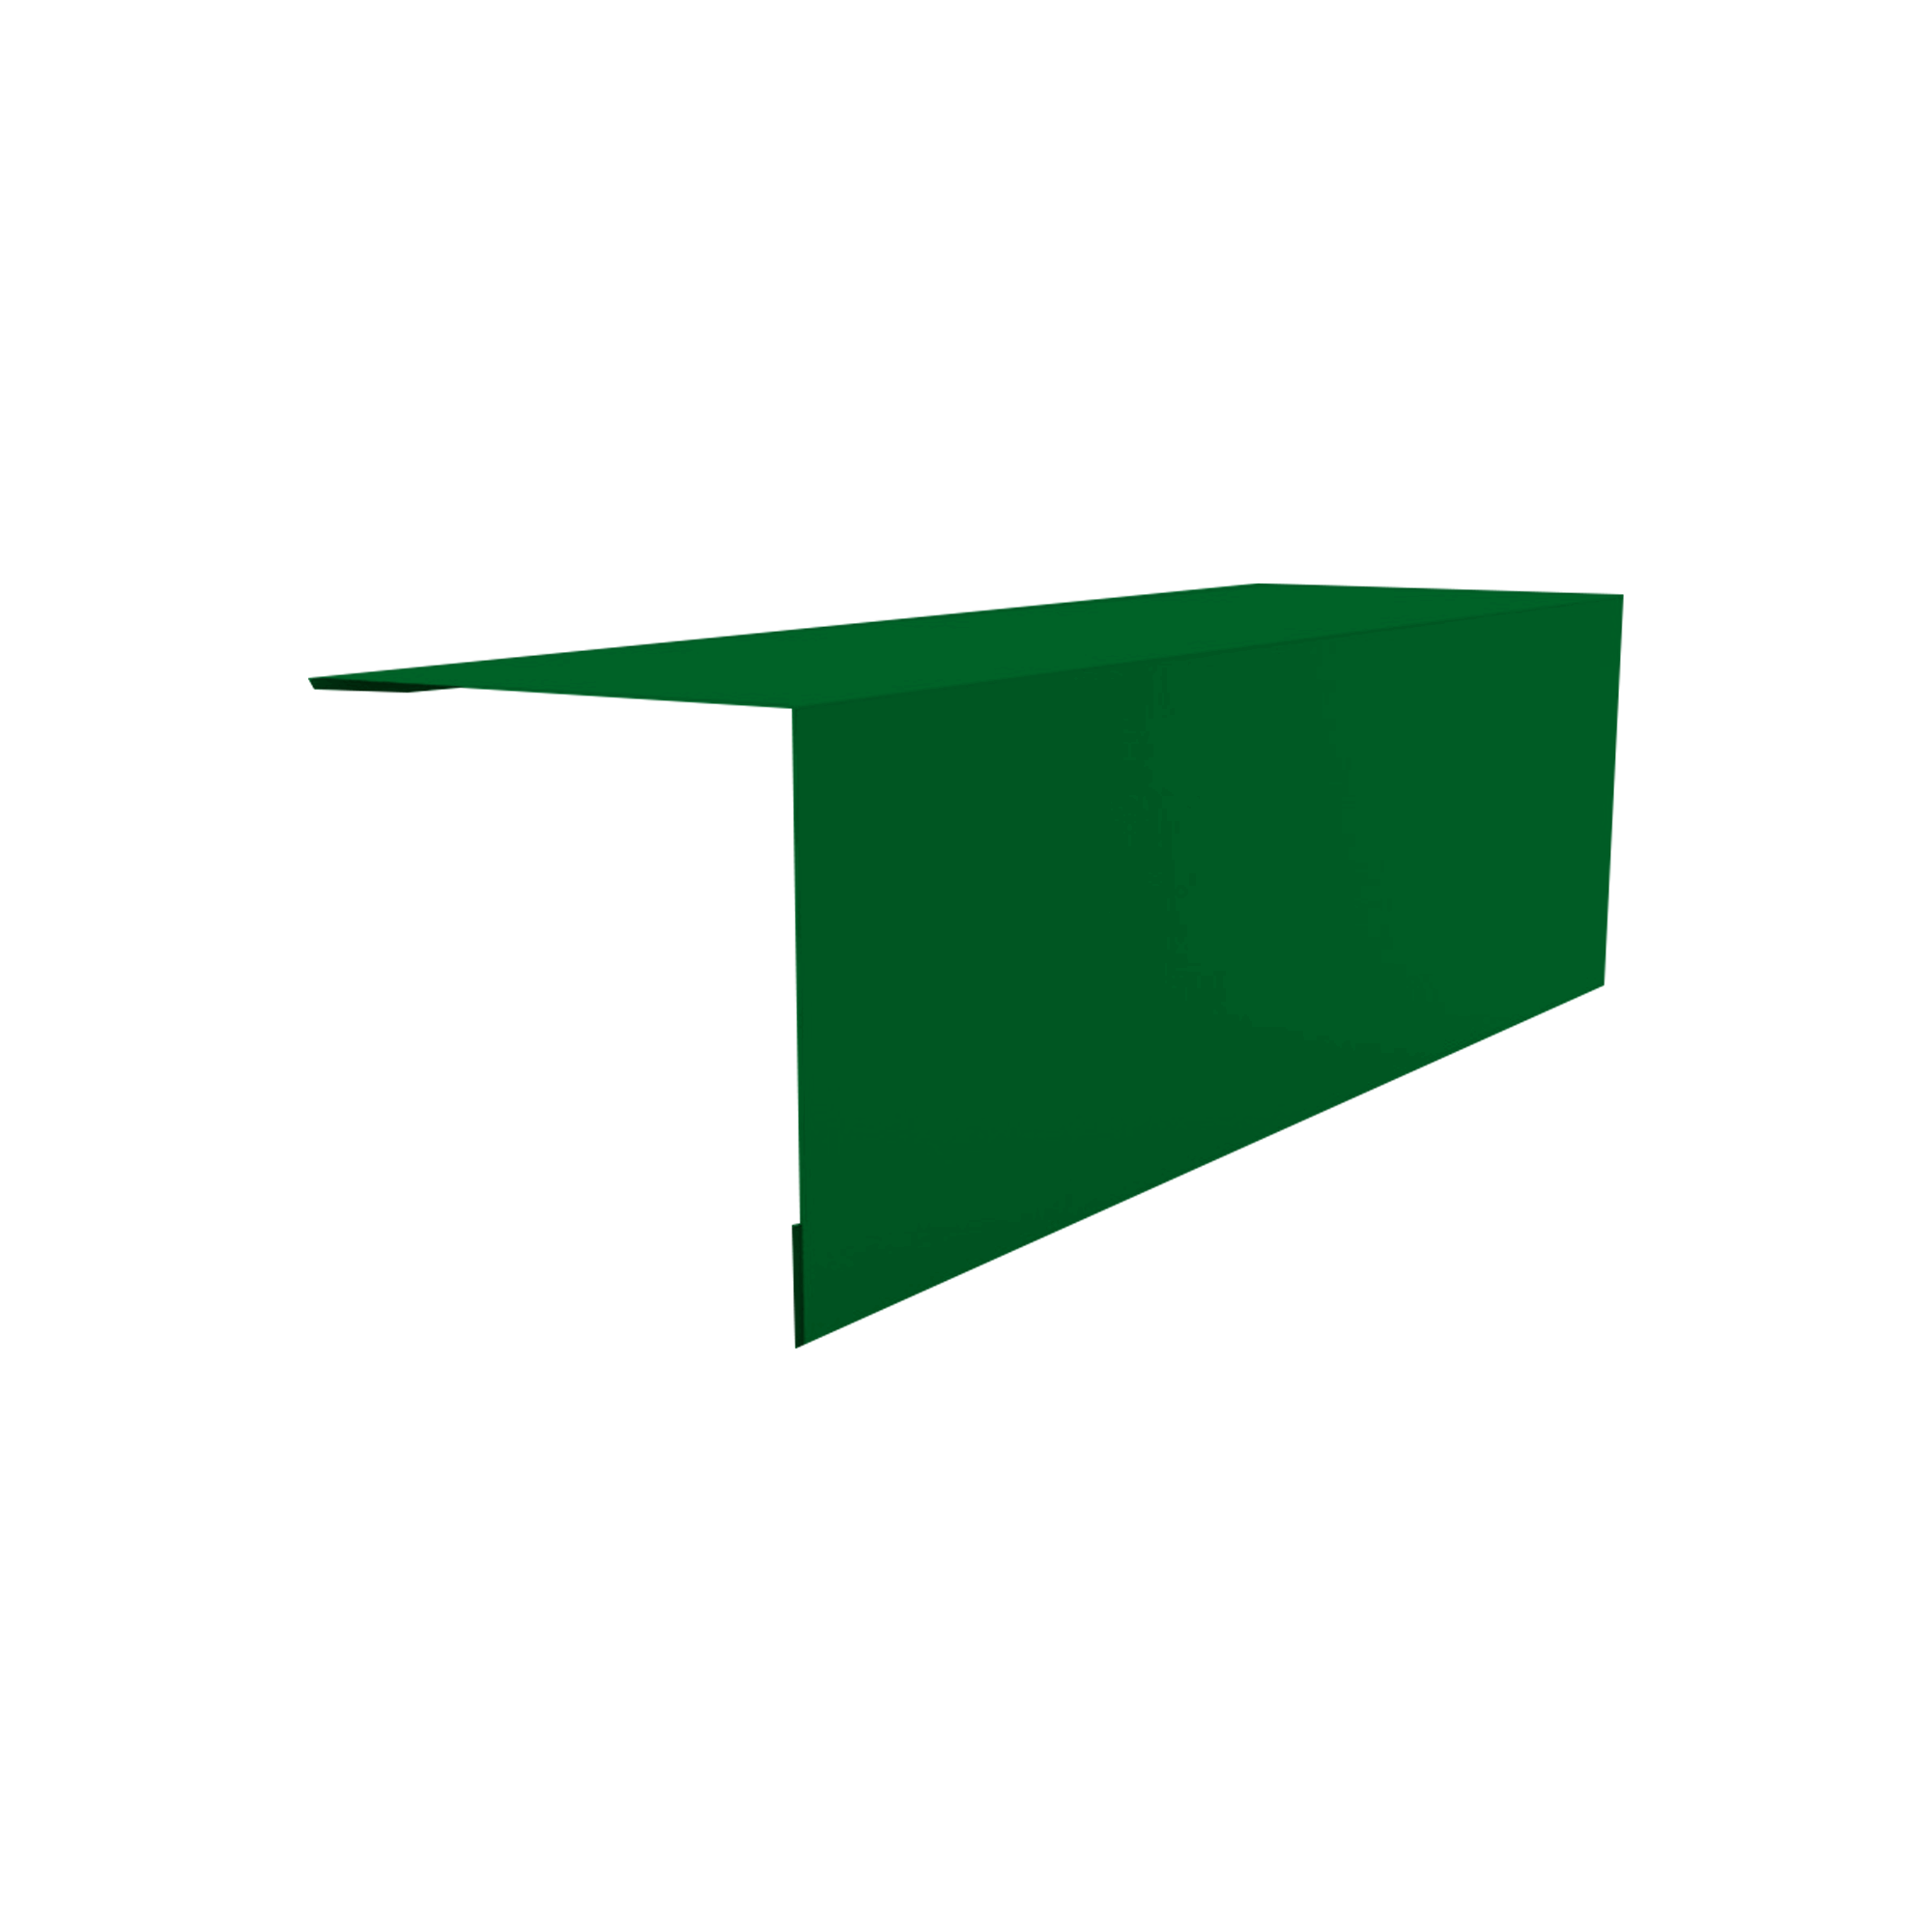 Планка угла наружного 50х50 Зеленый лист 0,45 мм Полиэстер Доборные элементы для кровли Кровля Сервис